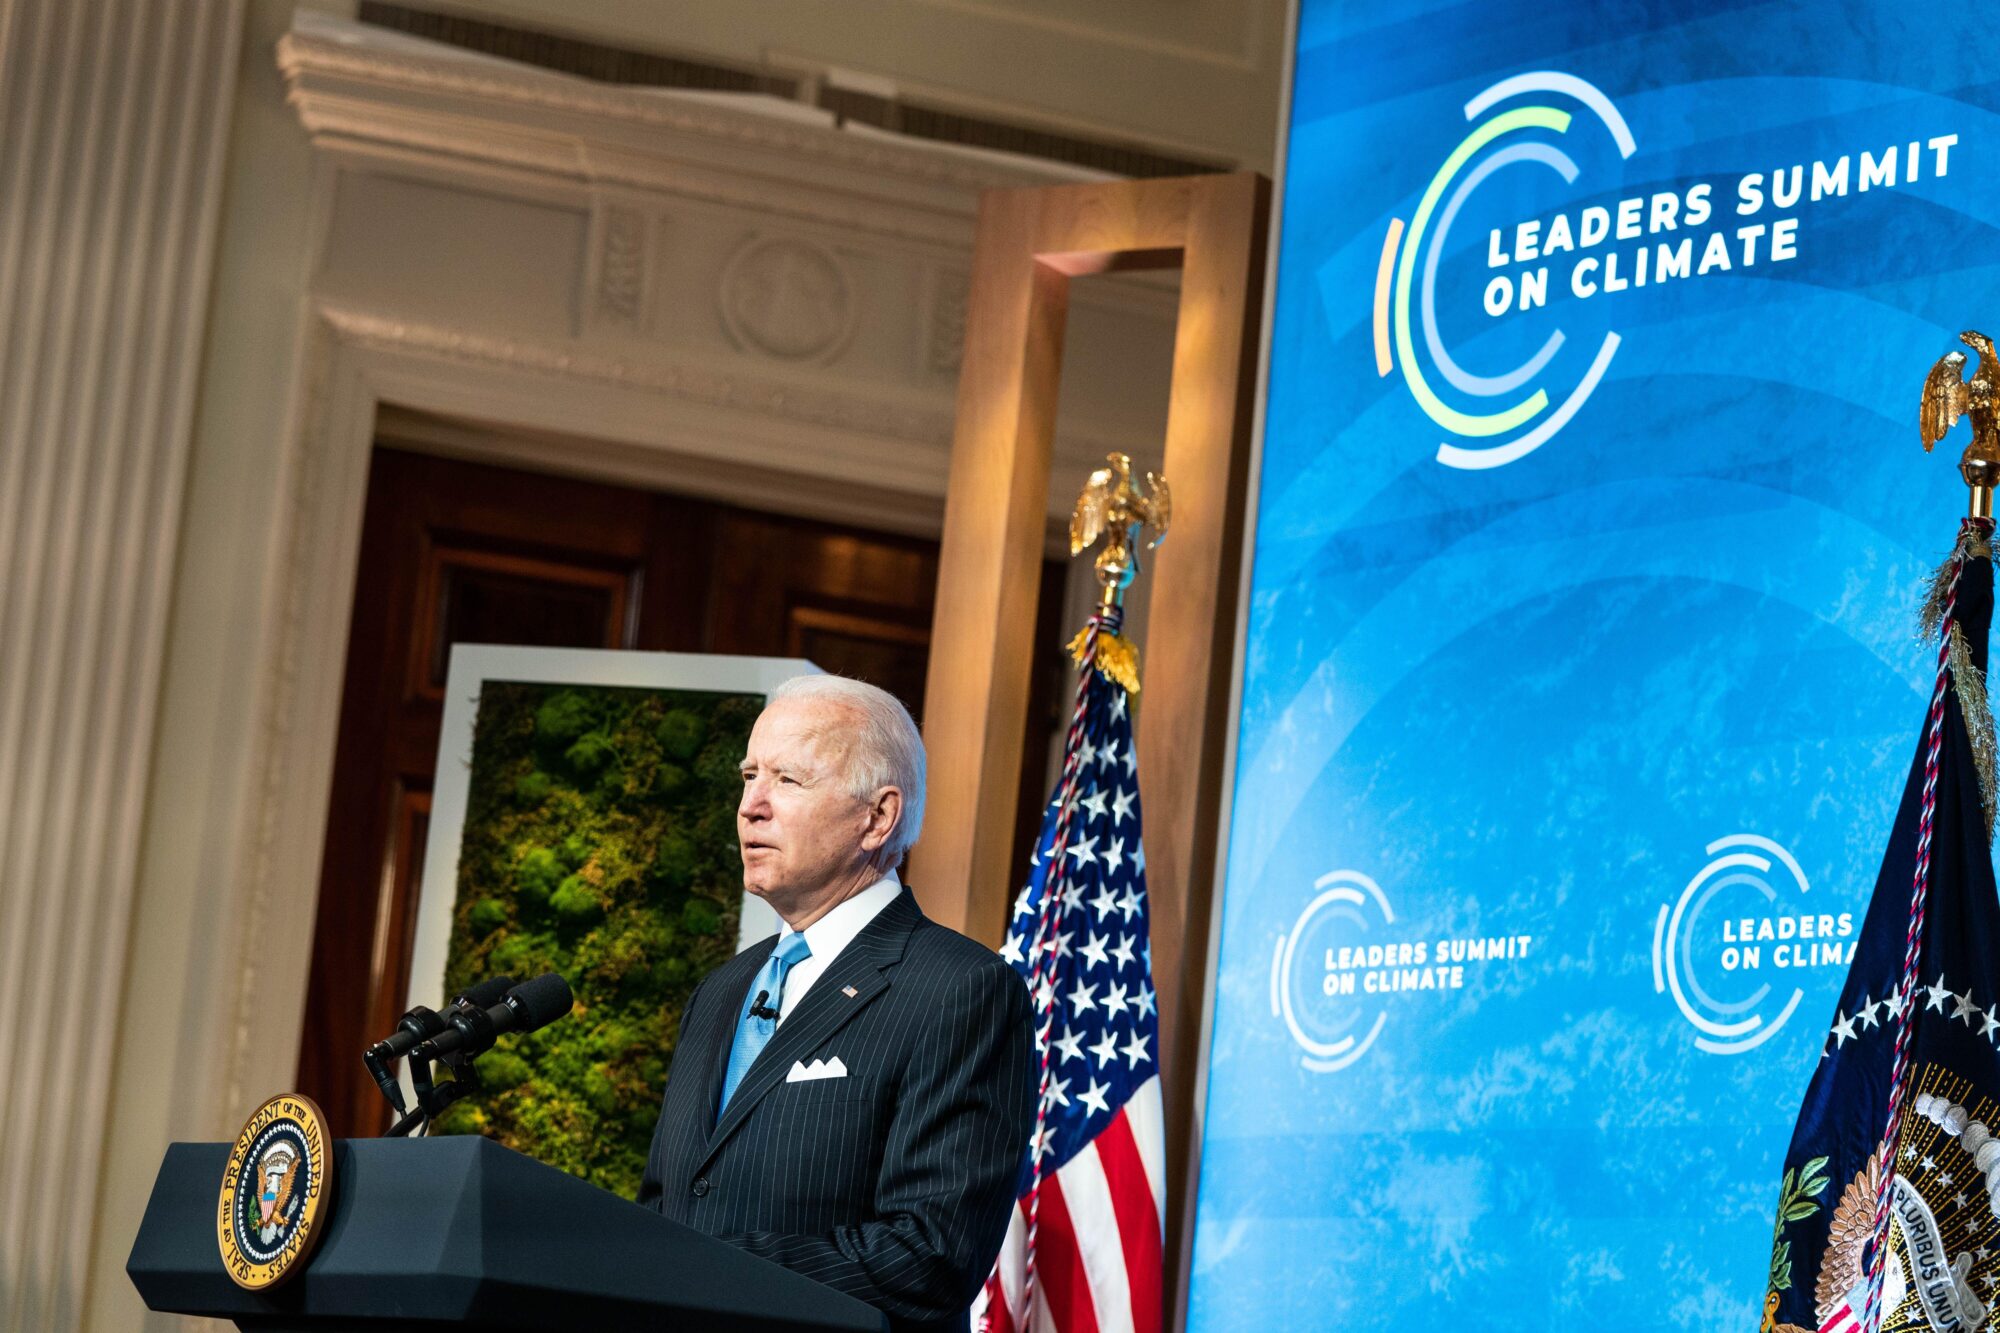 <p>El presidente de los Estados Unidos, Joe Biden, pronuncia un discurso durante una Cumbre virtual de líderes sobre el clima, en el Salón Este de la Casa Blanca (imagen: Alamy)</p>